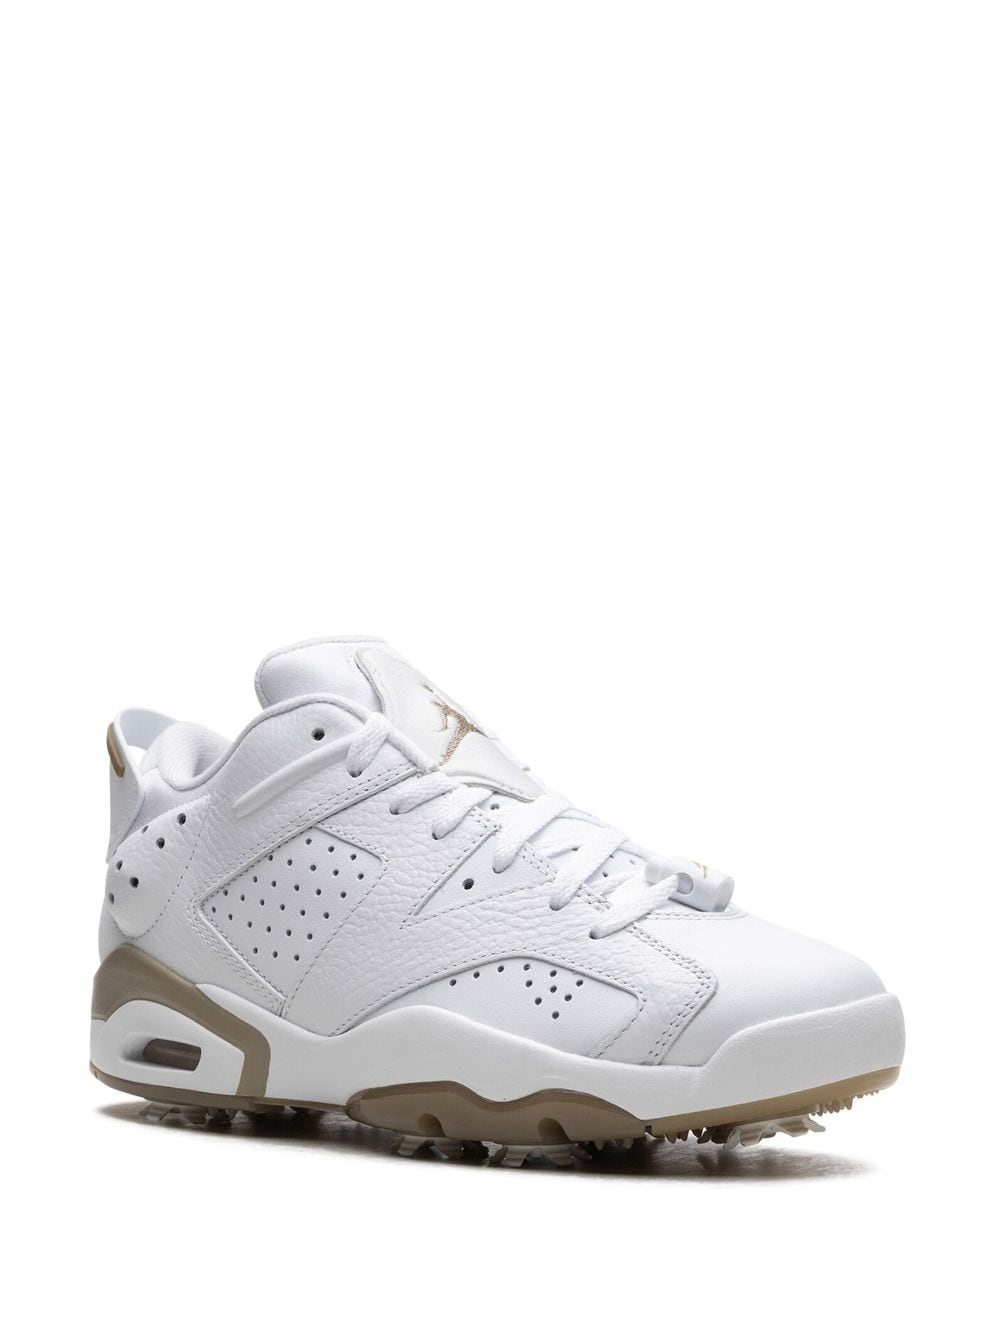 Air Jordan 6 Low Golf "White/Khaki" sneakers - 2